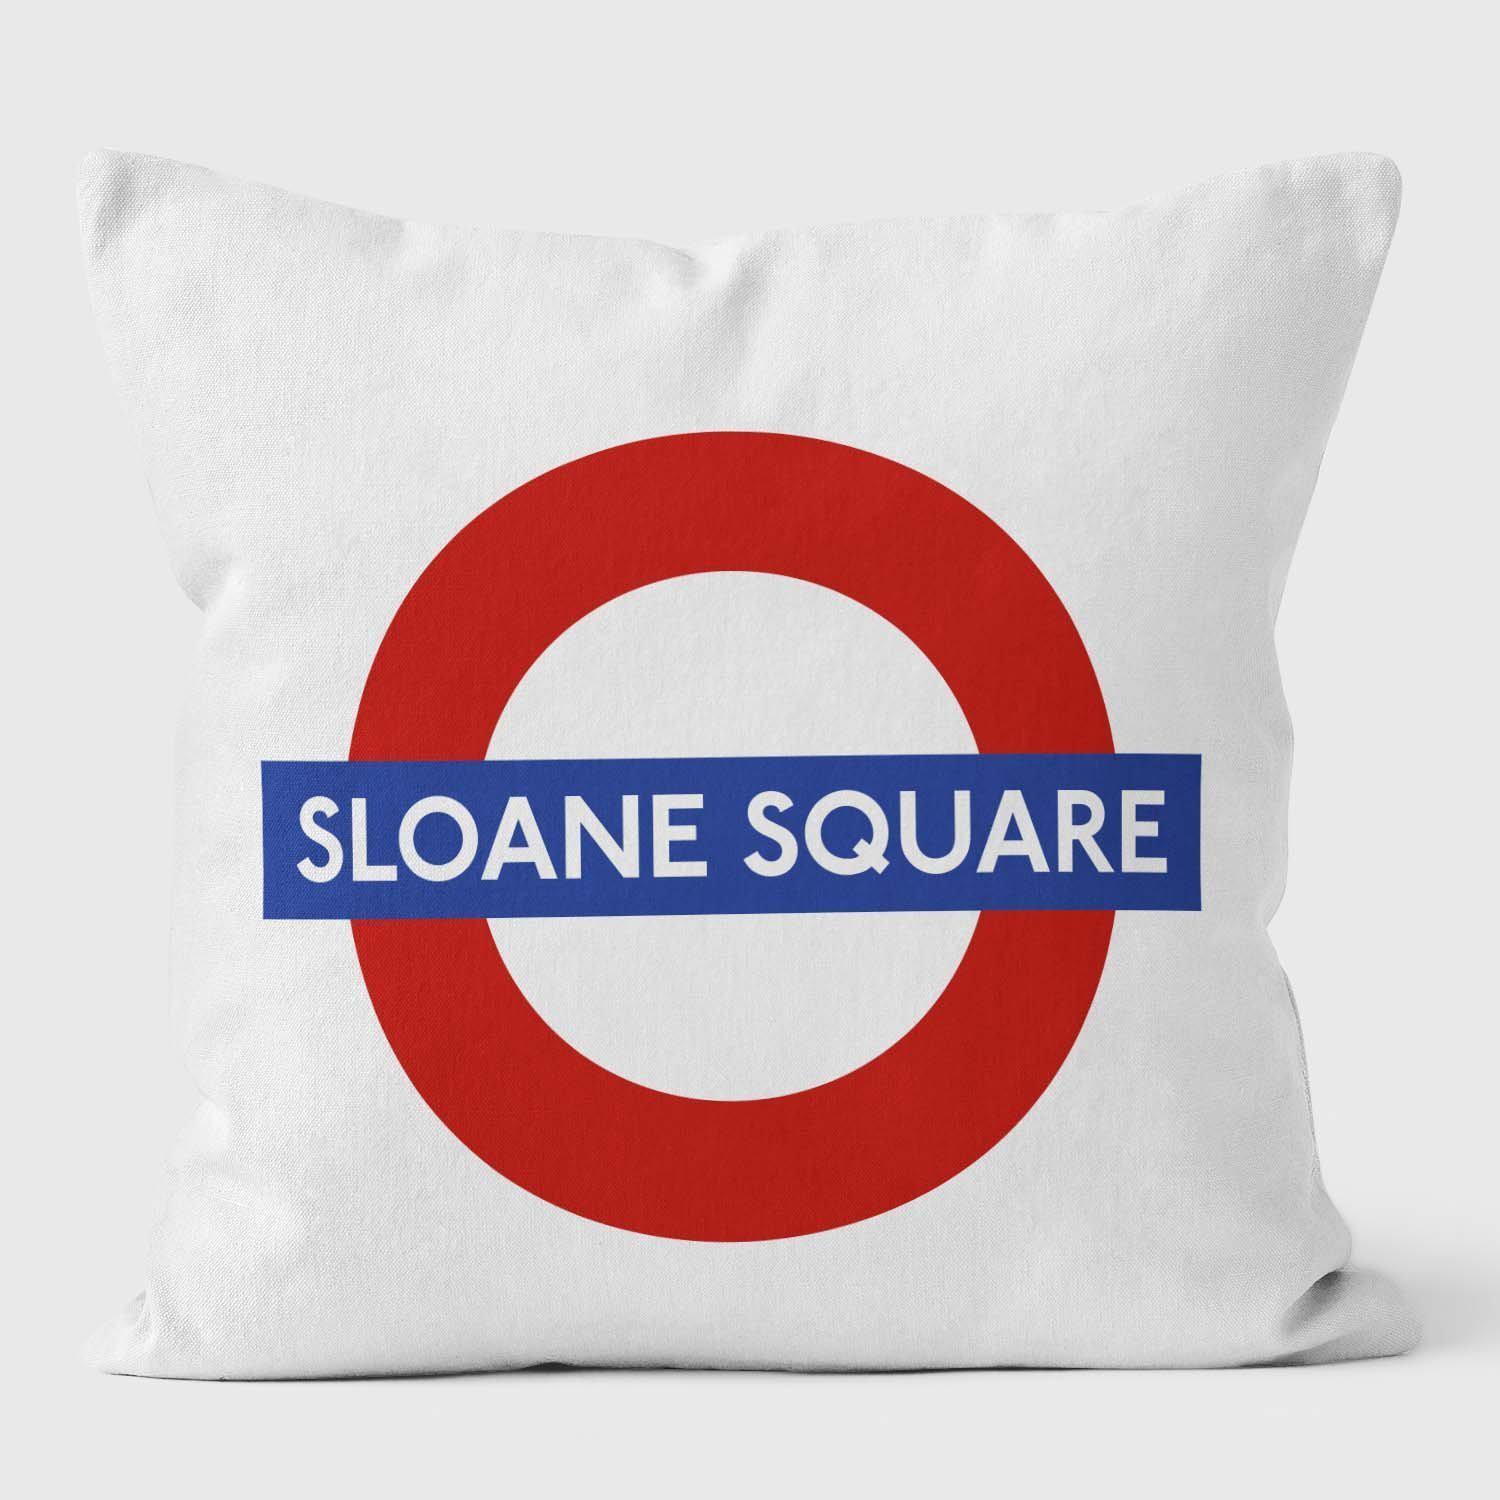 Sloane Square London Underground Tube Station Roundel Cushion - Handmade Cushions UK - WeLoveCushions